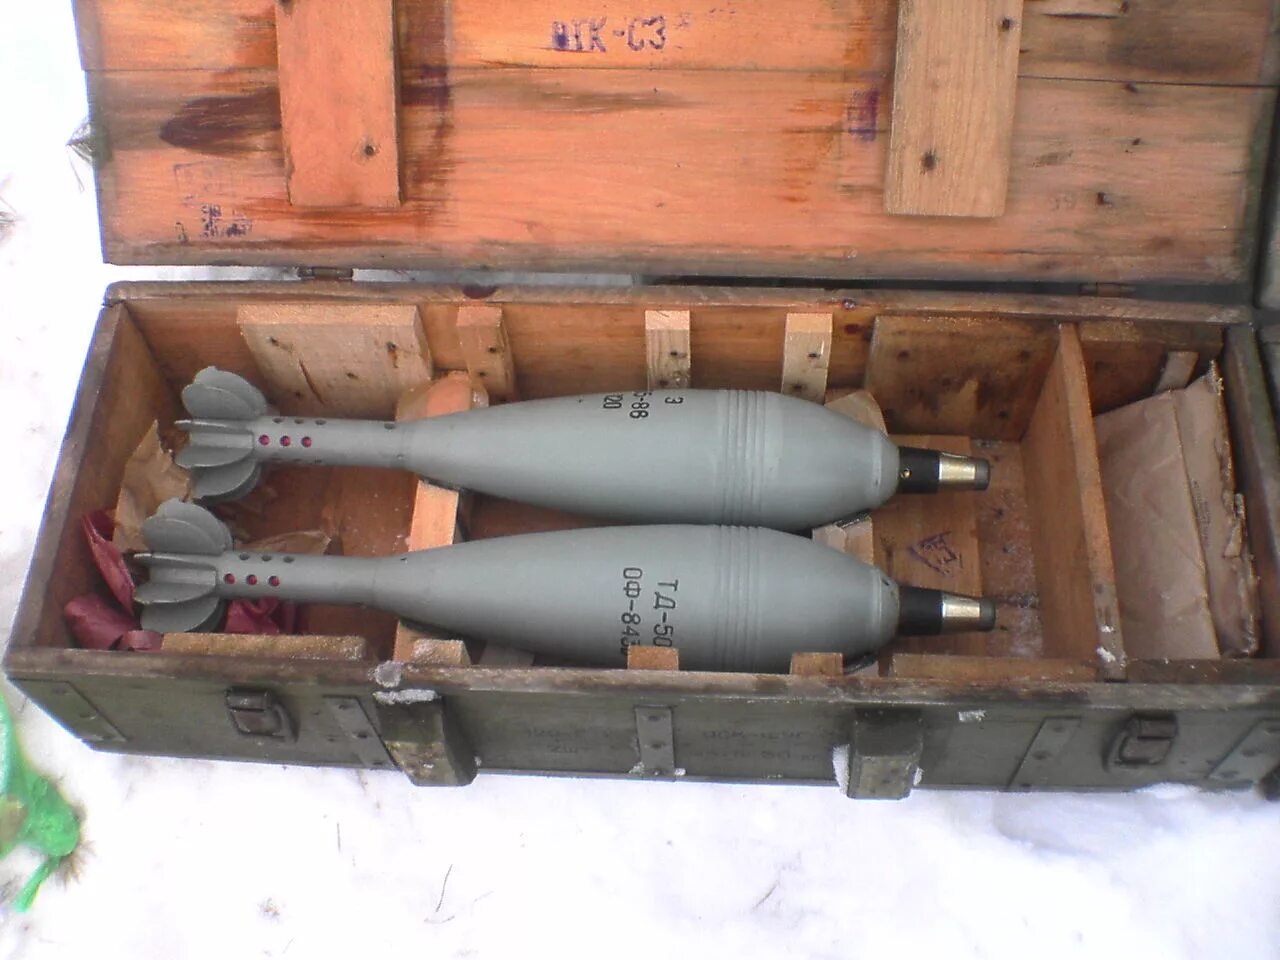 Б 2б 11. Калибр 122 мм снаряд. Ящик для взрывателей 120 мм миномета. 120 Мм мины в ящике. Укупорка 120 мм мин.